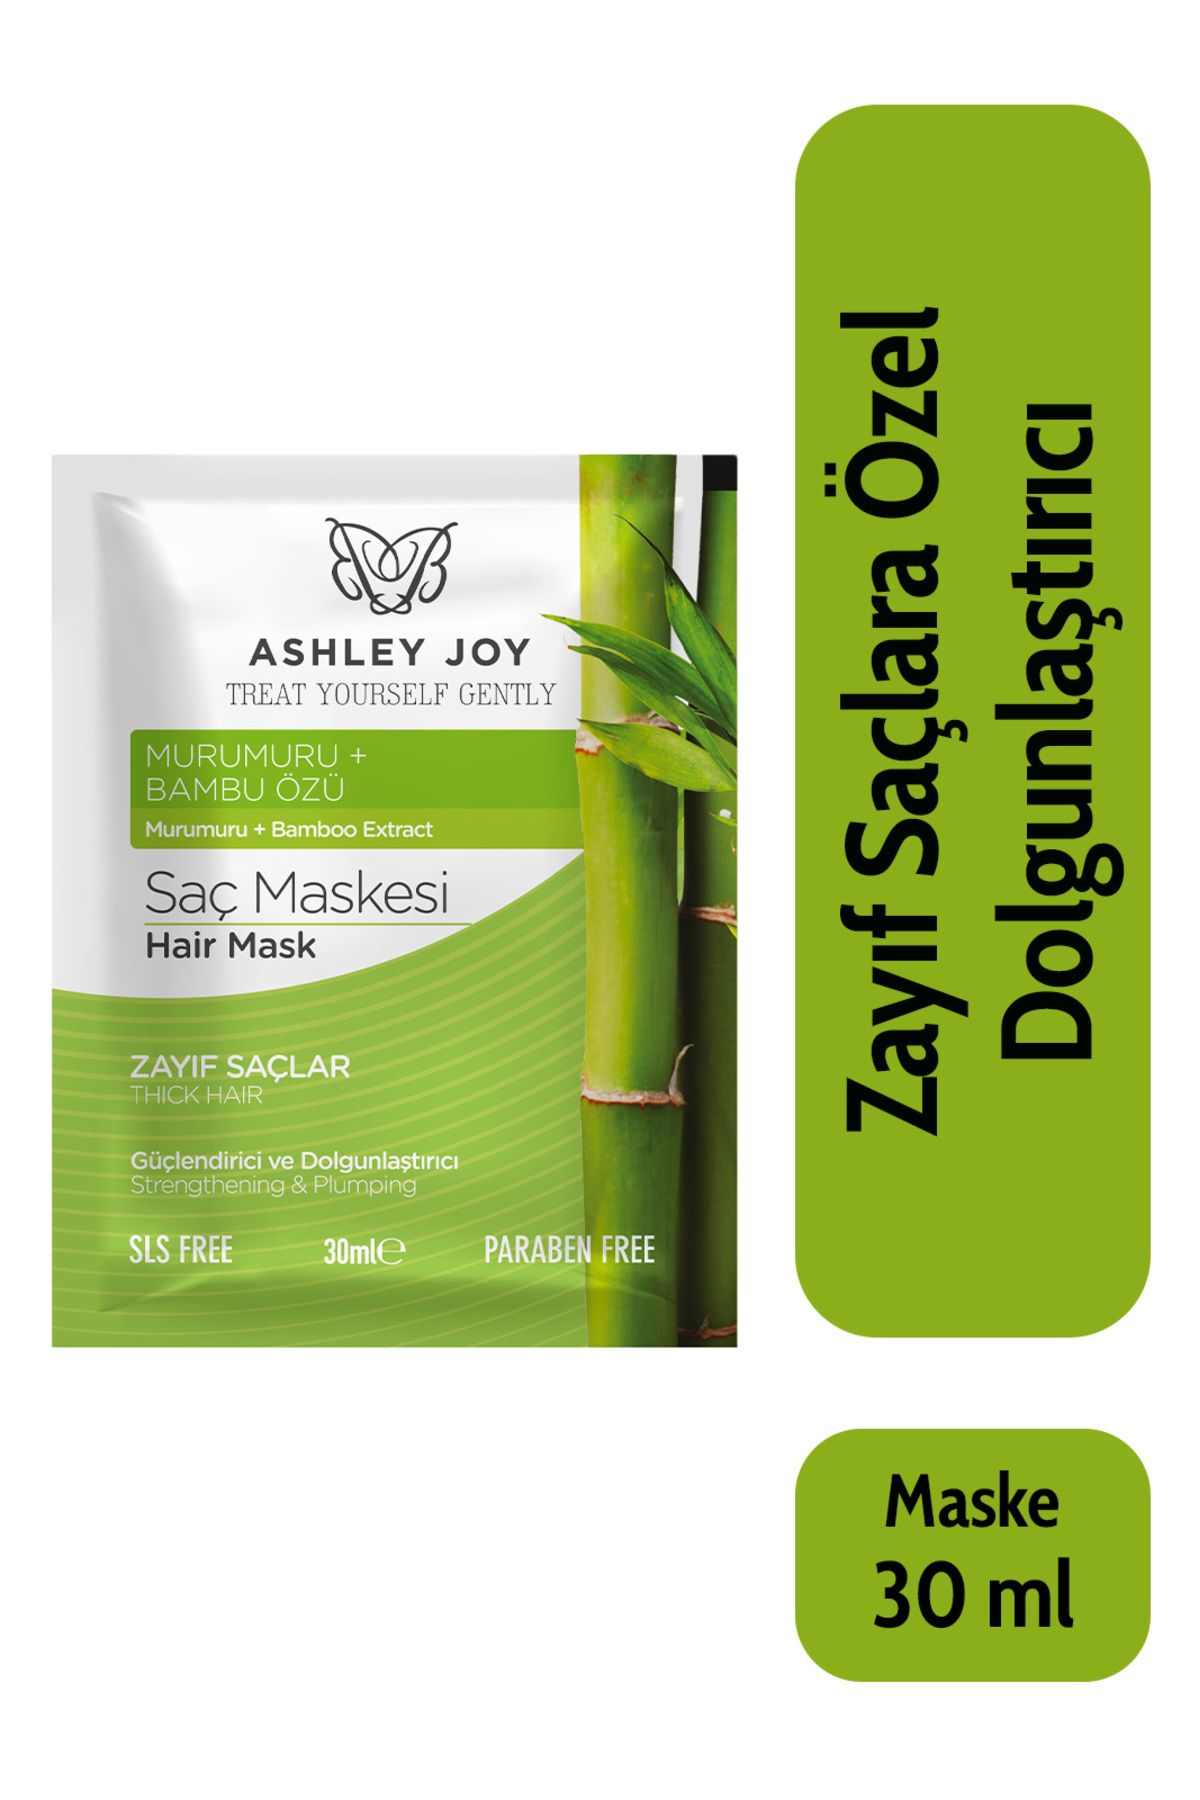 Ashley Joy Zayıf Saçlara Özel Bambu Içeren Güçlendirici Ve Dolgunlaştırıcı Saç Bakım Maskesi 30 ml